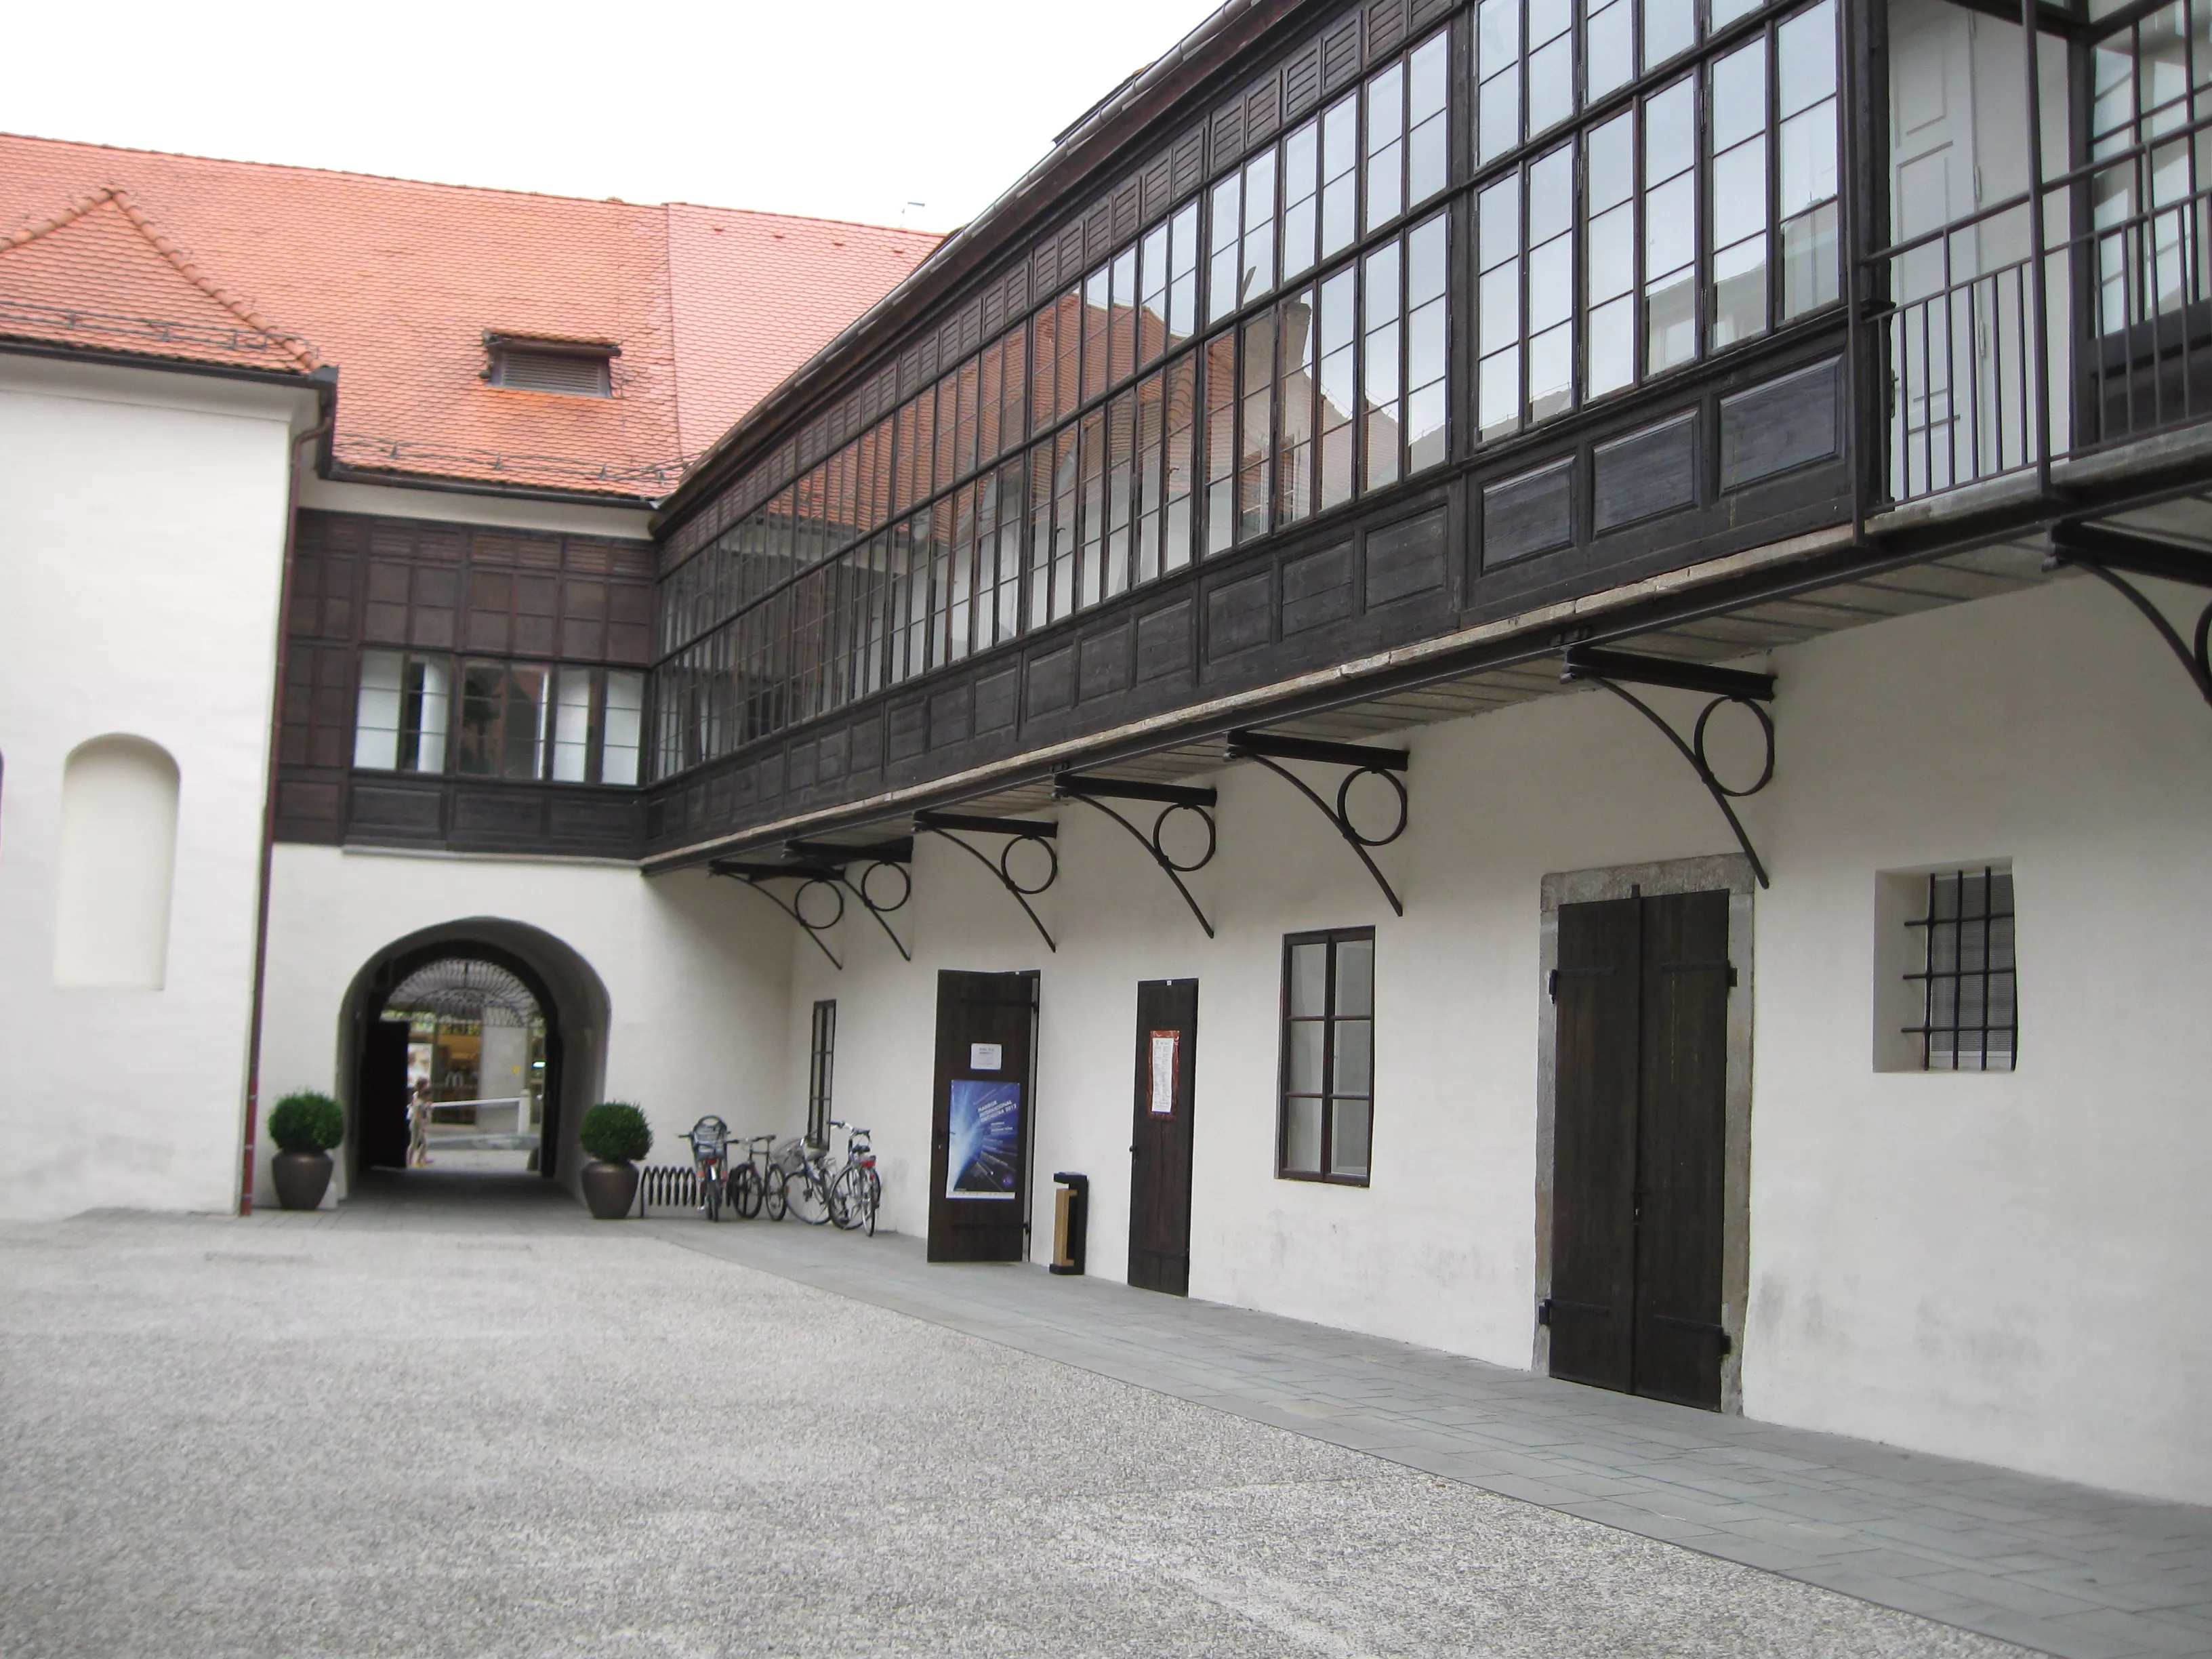 Vetrinjski Dvor in Slovenia, Europe | Architecture - Rated 0.9